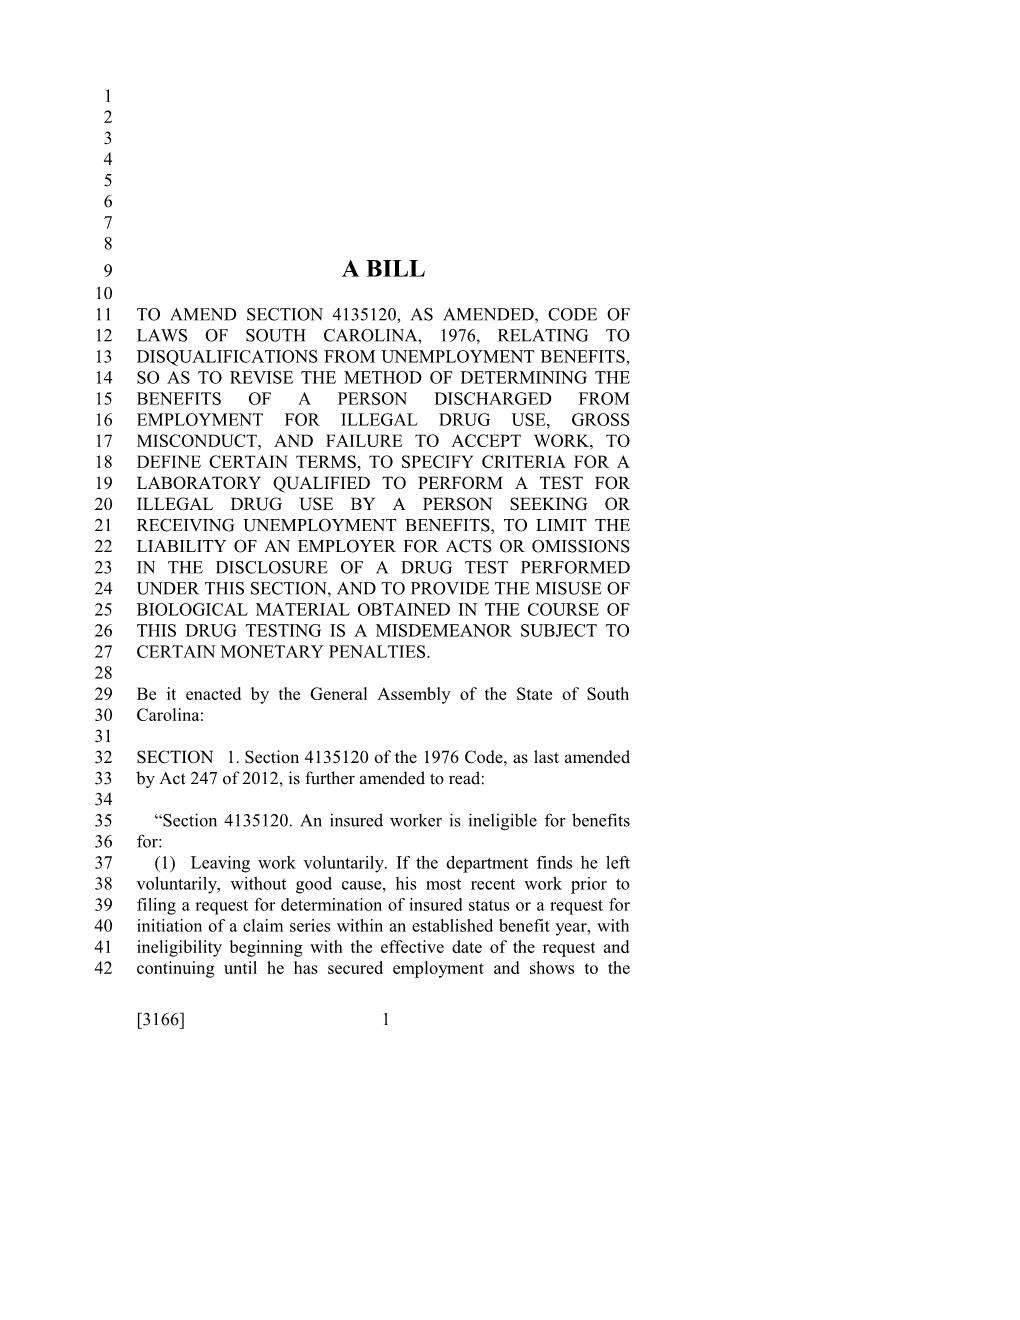 2015-2016 Bill 3166 Text of Previous Version (Dec. 11, 2014) - South Carolina Legislature Online